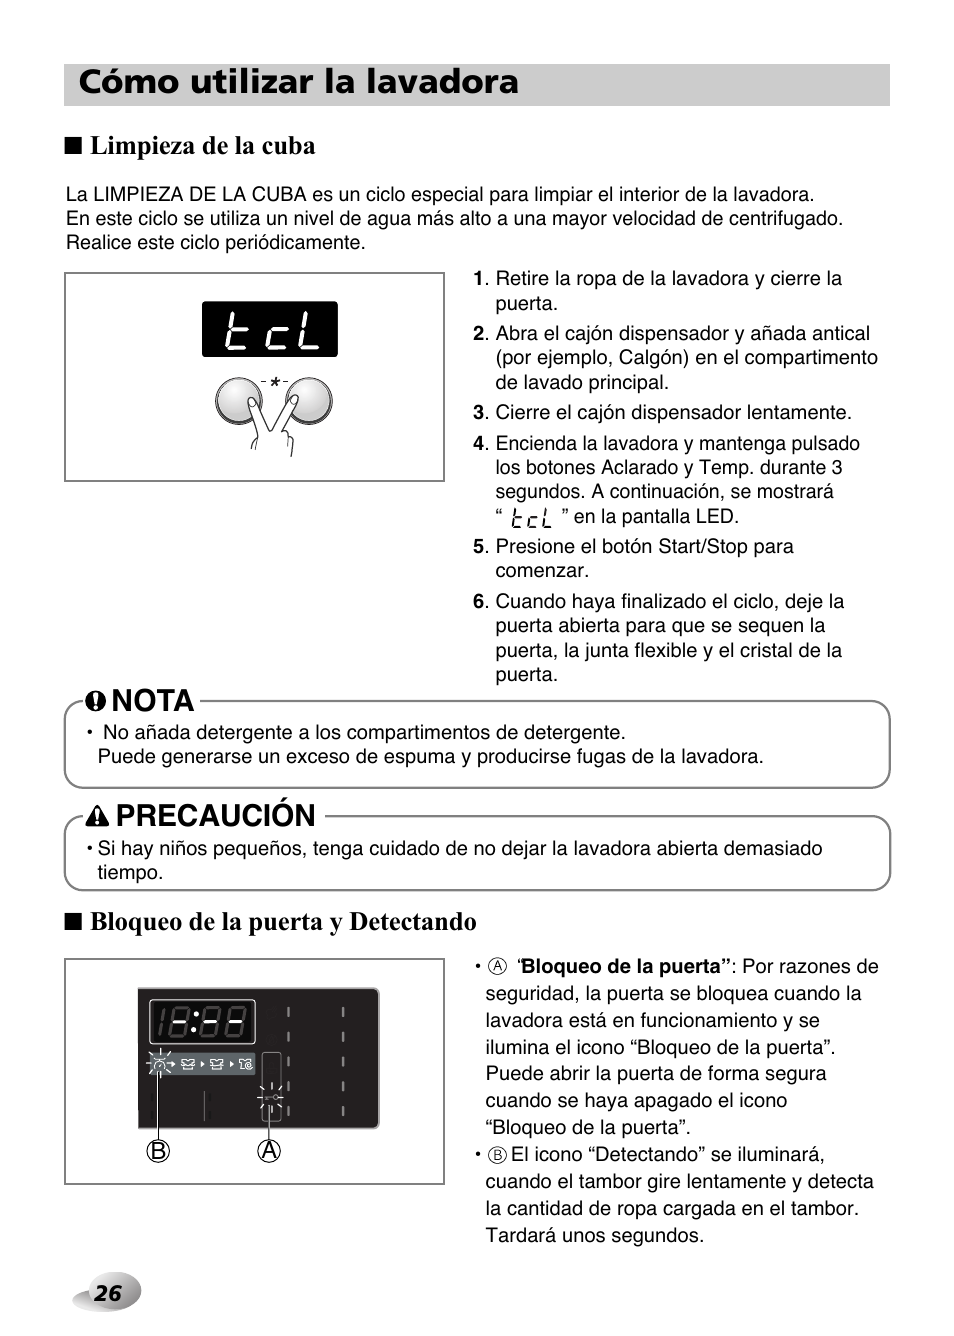 Cómo utilizar la lavadora, Nota, Precaución | Limpieza de la cuba, Bloqueo de la puerta y detectando | LG F1480TD Manual del usuario | Página 26 / 44